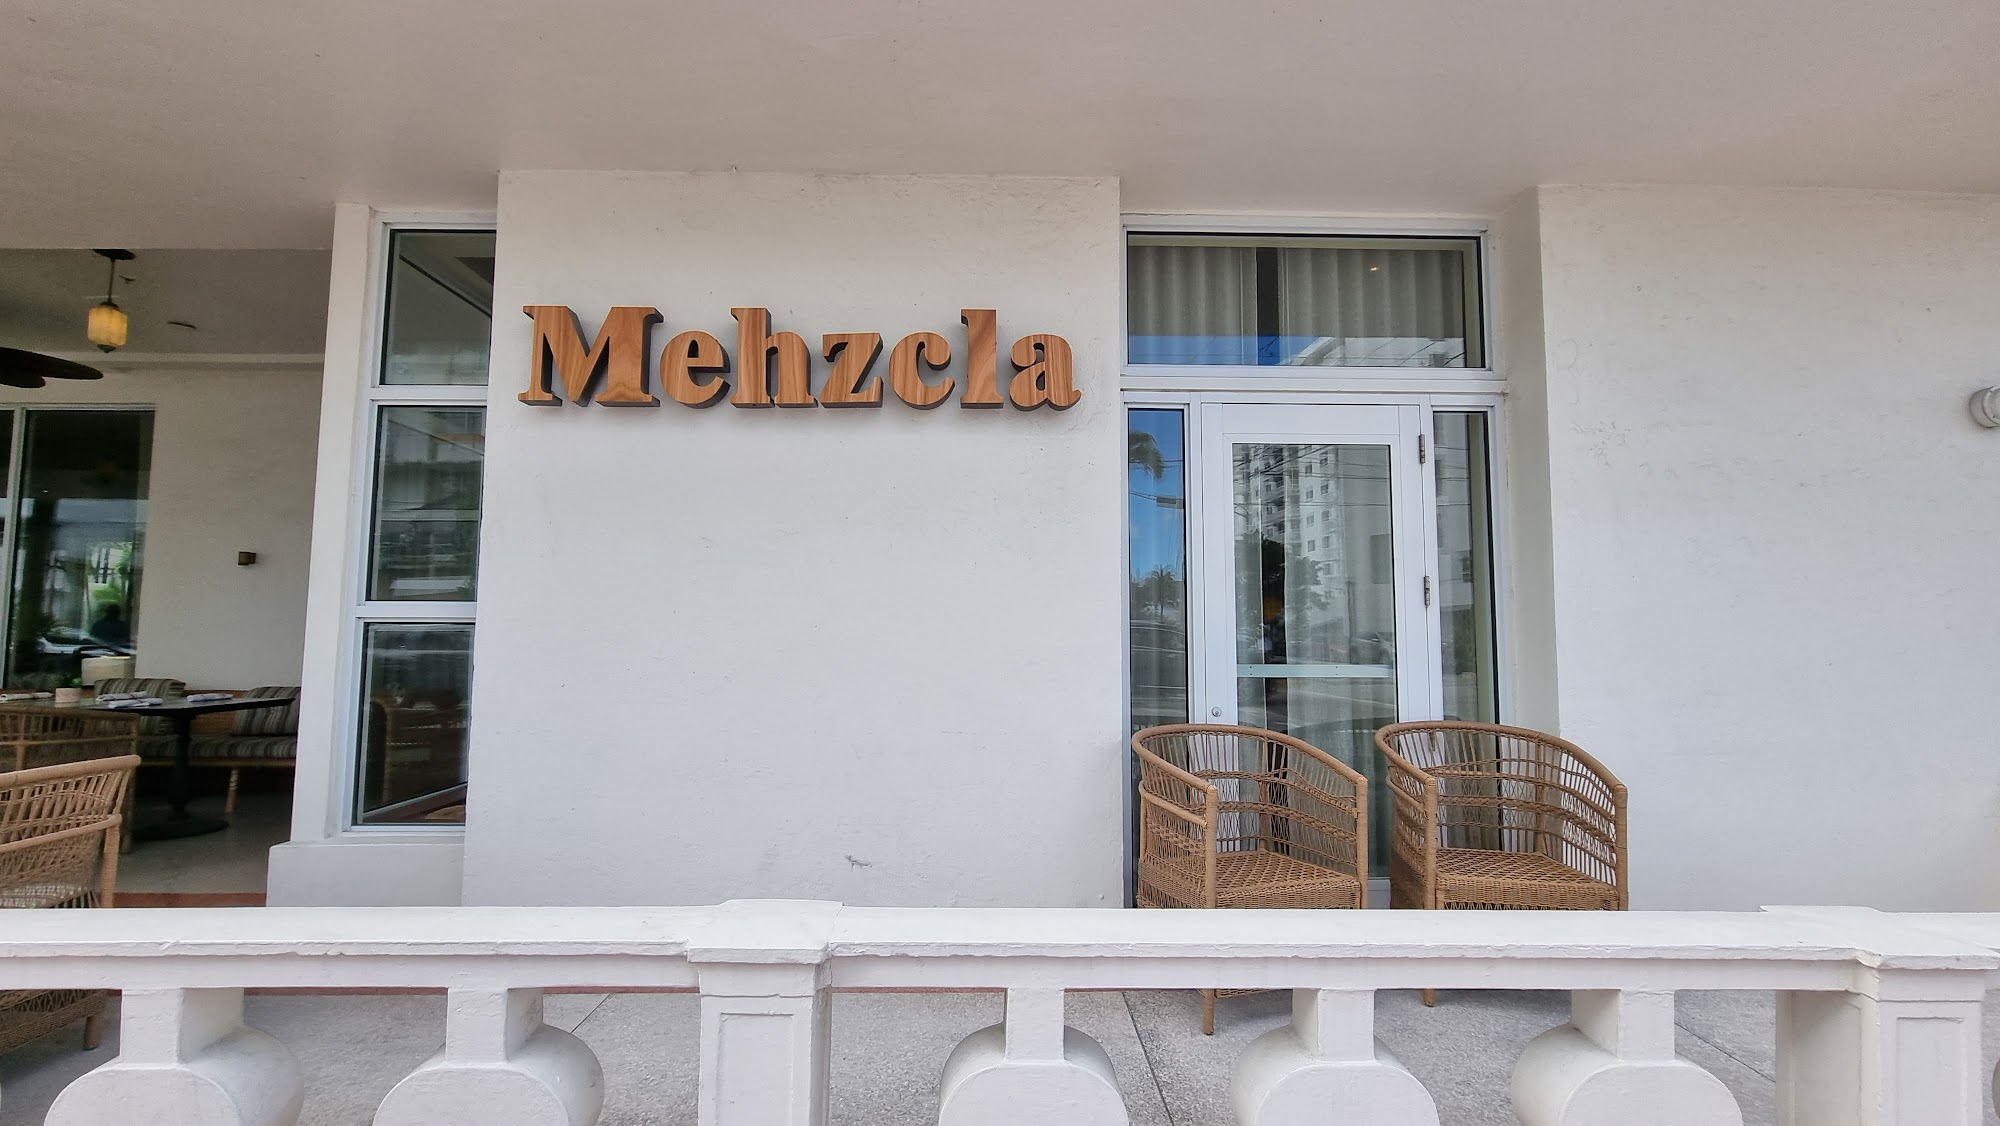 Mehzcla Restaurant